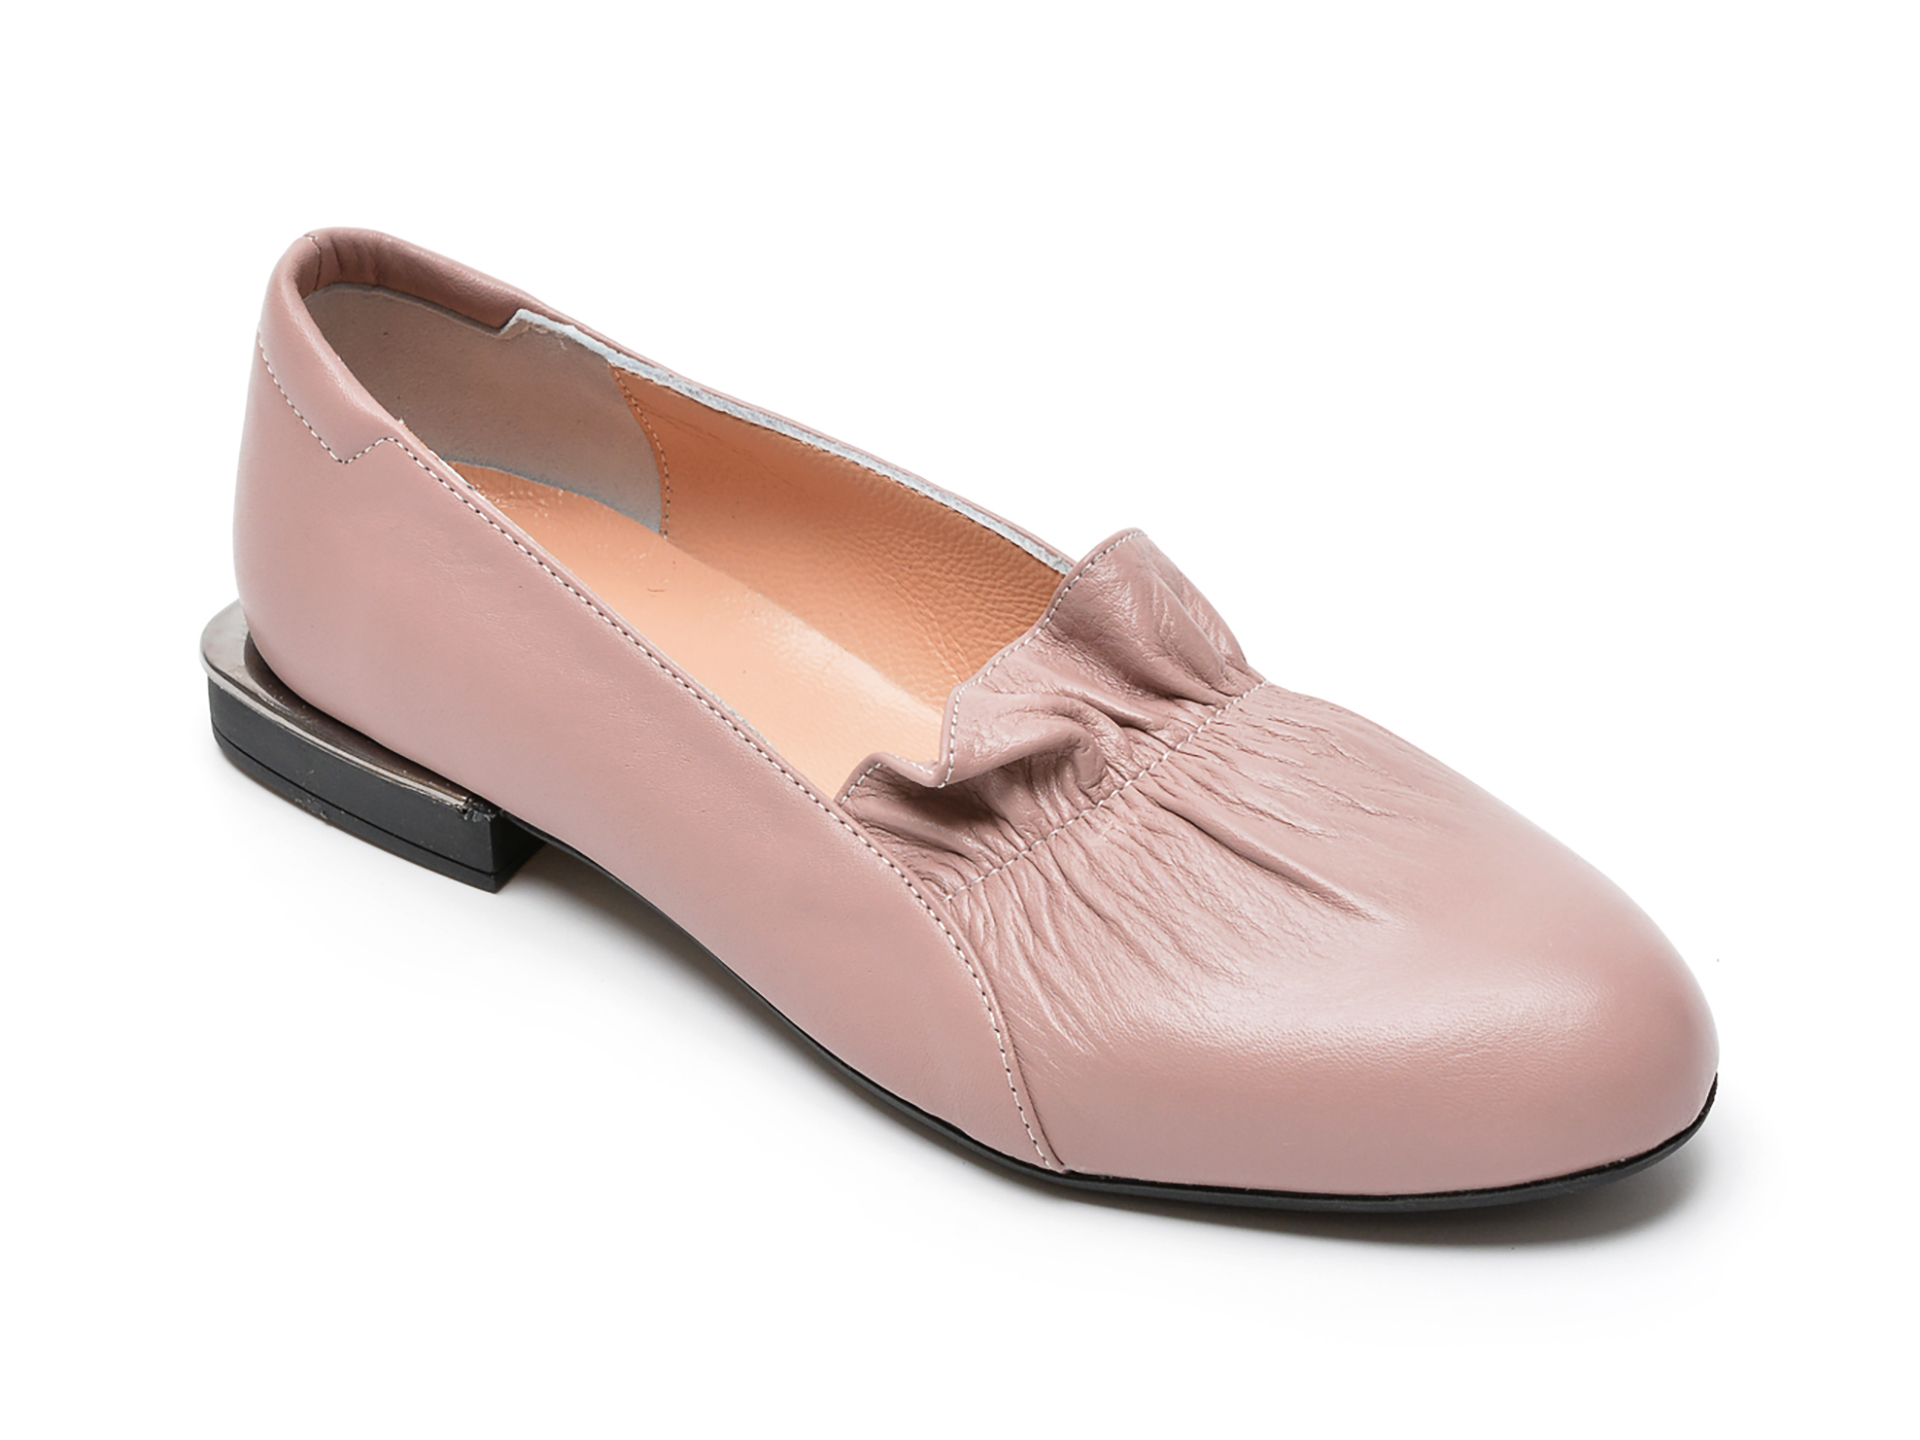 Pantofi FLAVIA PASSINI nude, 370, din piele naturala Flavia Passini